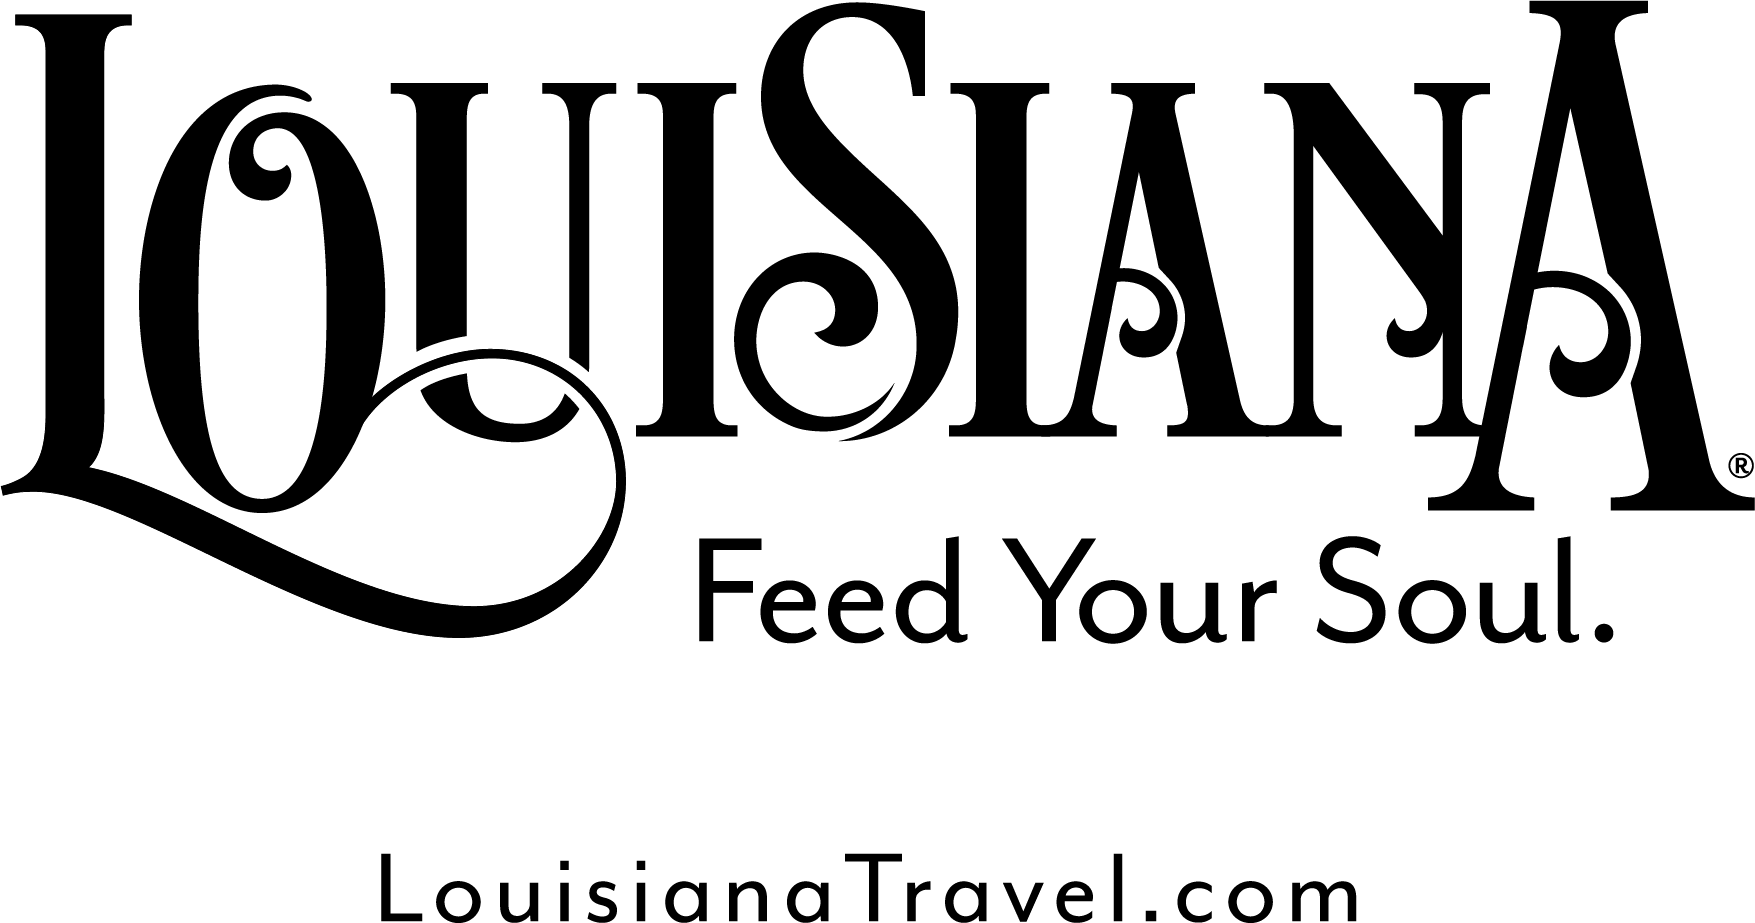 The Louisiana Logo - Downloads LouisianaFeedYourSoul Logos PNG